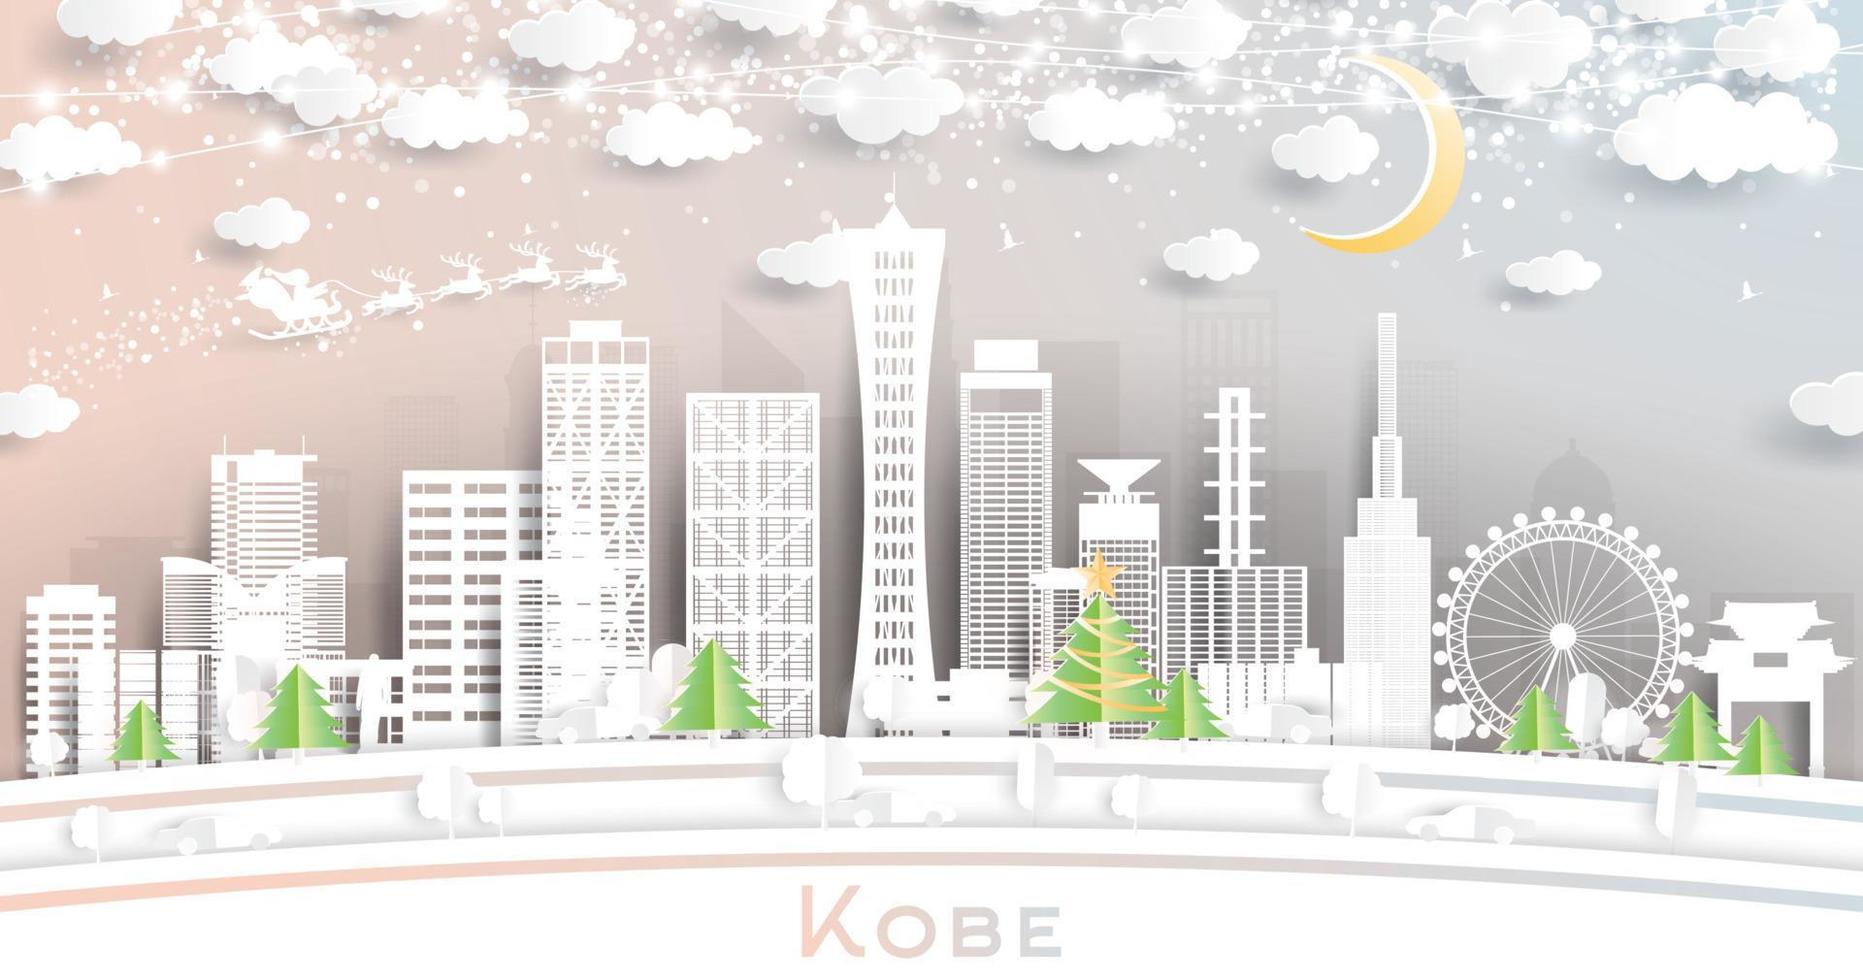 horizon de la ville de kobe au japon dans un style découpé en papier avec des flocons de neige, une lune et une guirlande de néons. vecteur